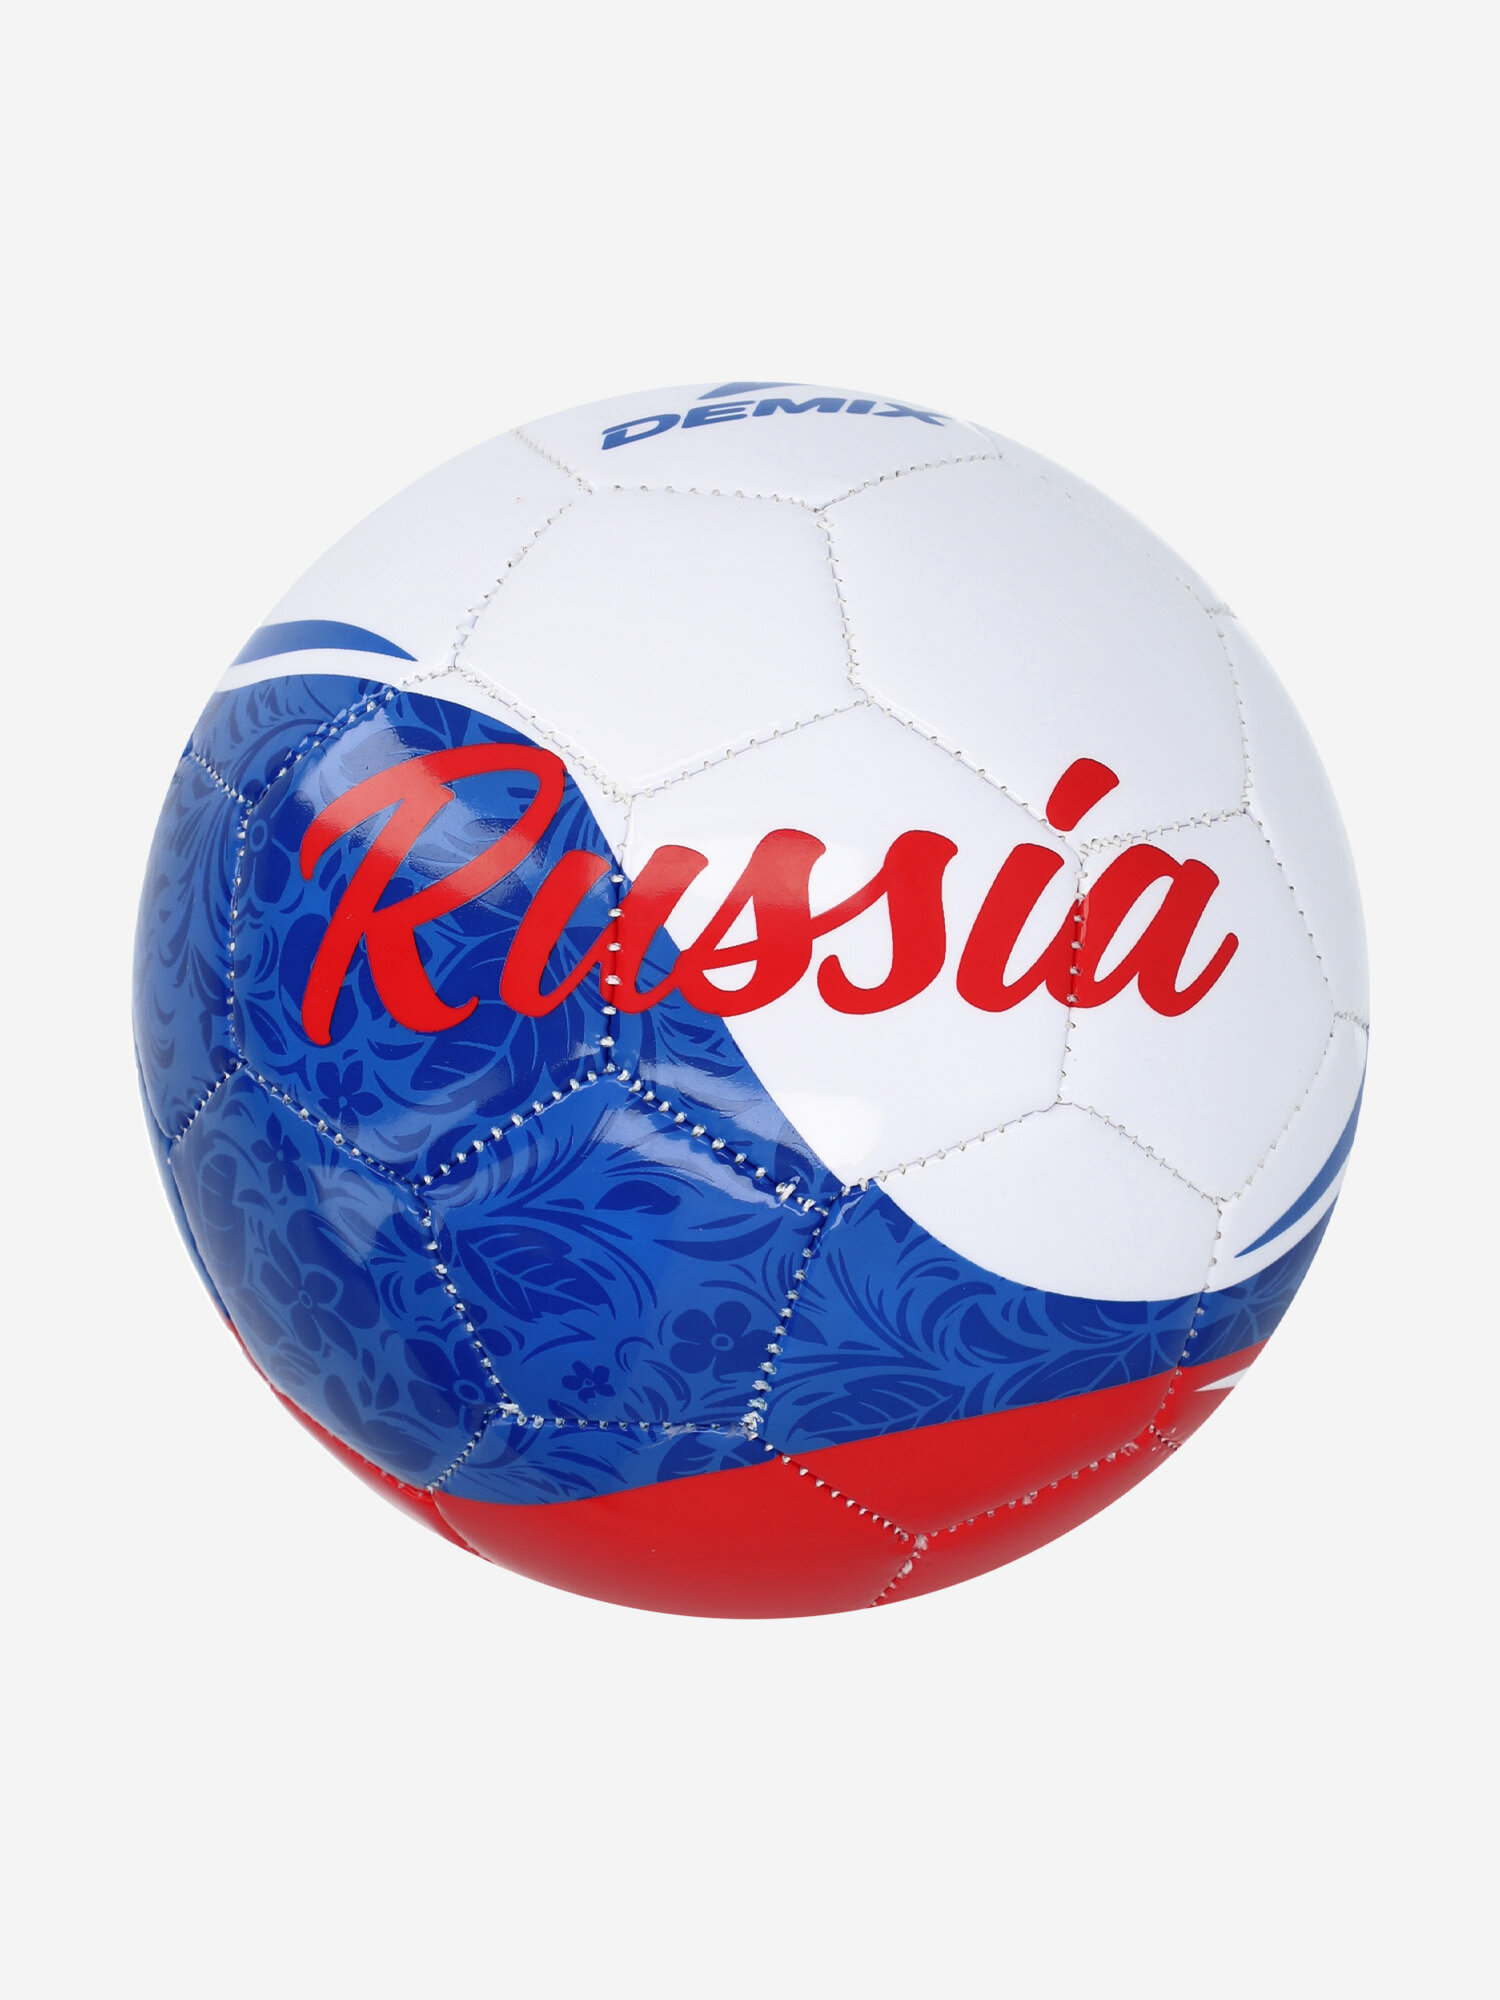 Мяч футбольный сувенирный Demix Мультицвет; RUS: 1, Ориг: one size